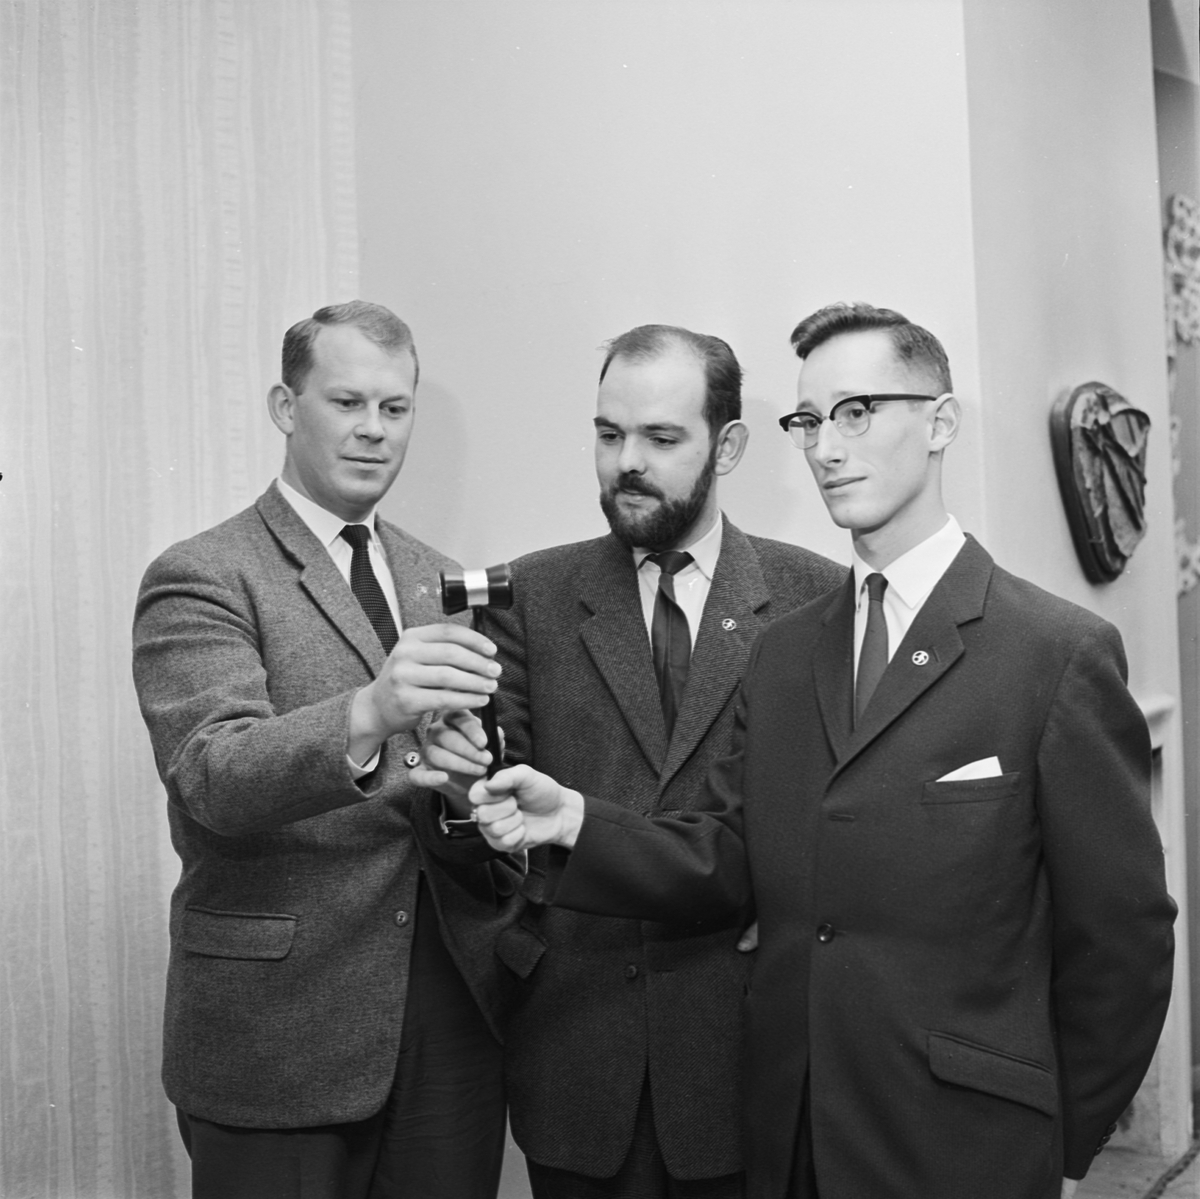 Studentkåren, politisering och sakfrågor i debatt vid kårvalsmöte, Uppsala 1961